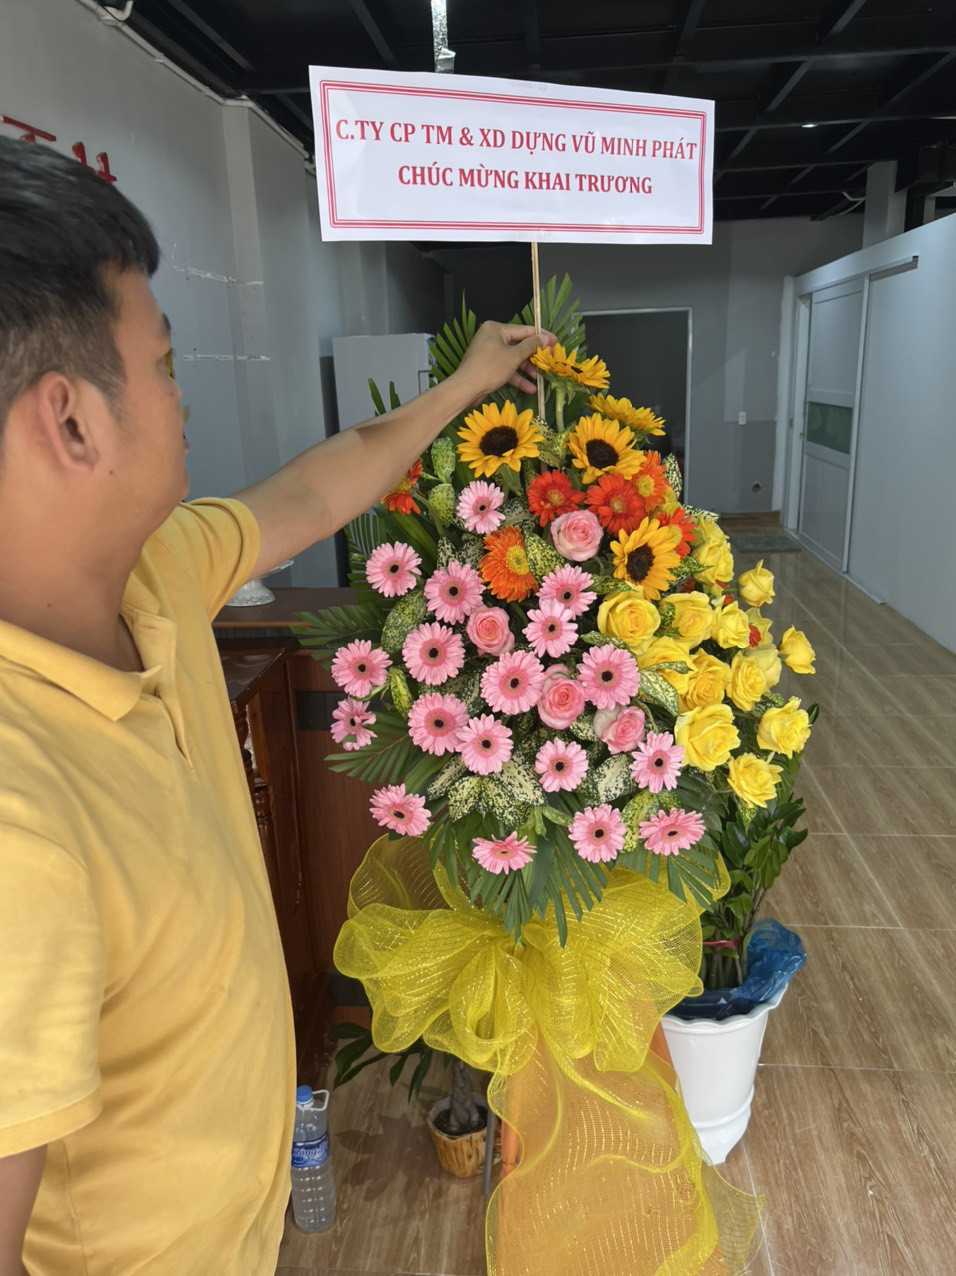 Vũ Minh Phát gửi hoa chúc mừng khai trương